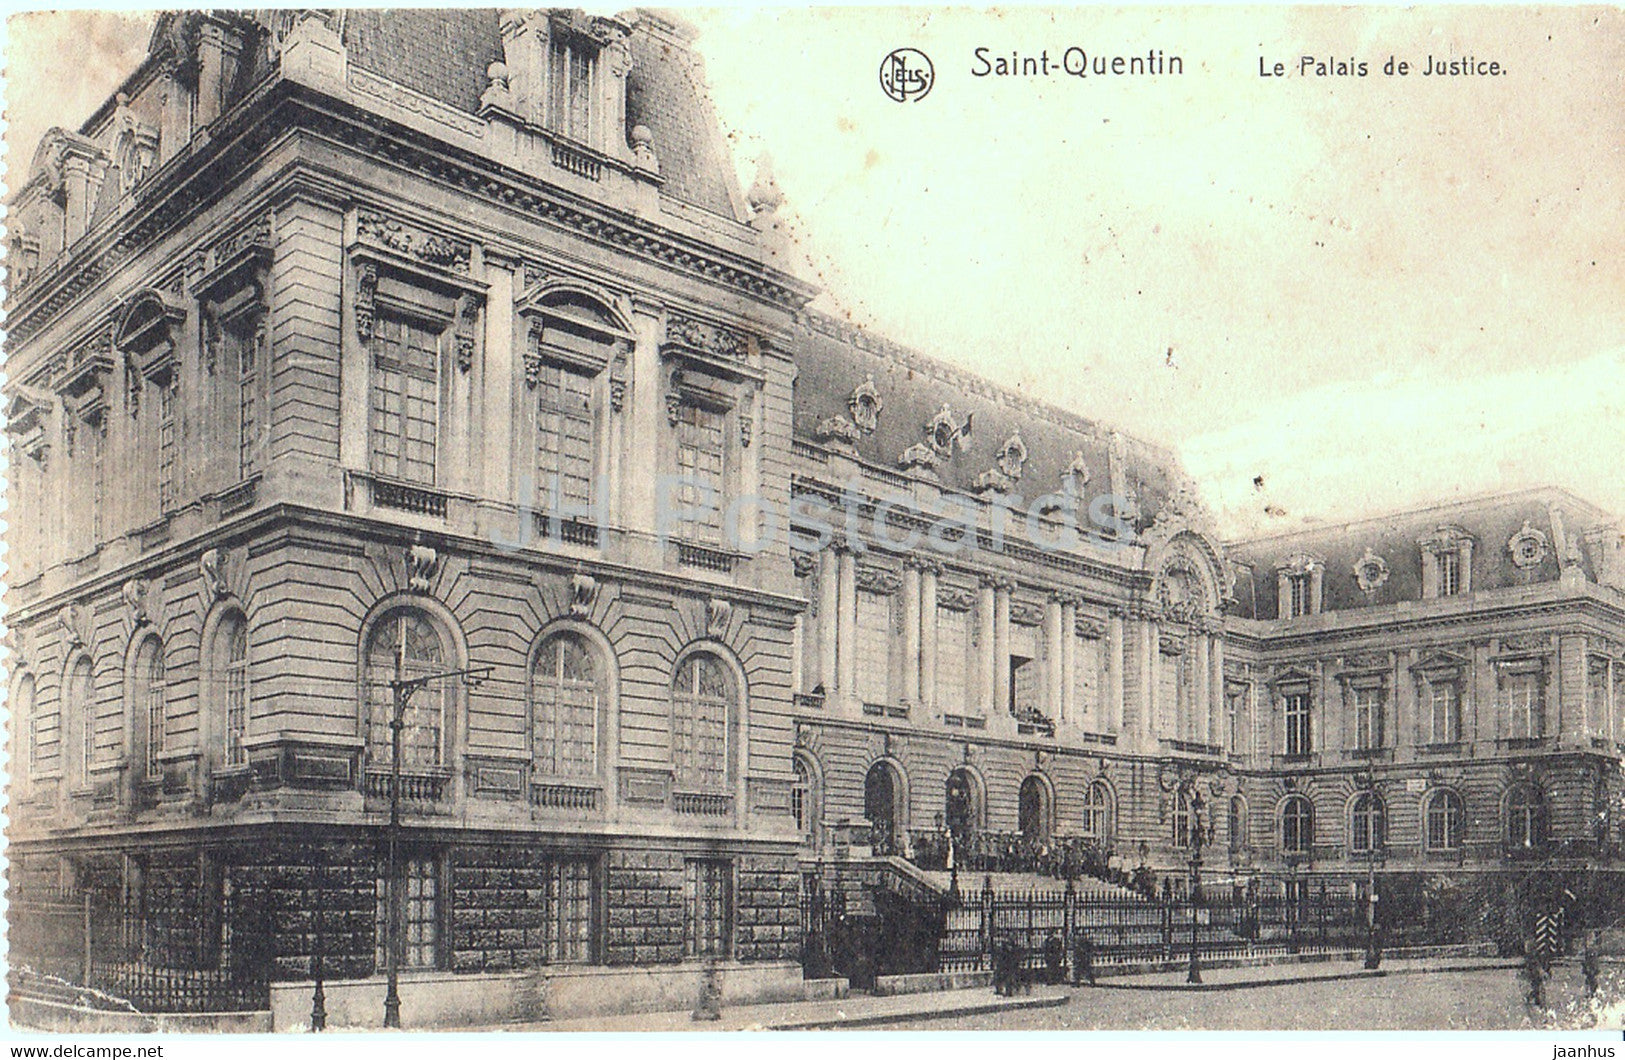 Saint Quentin - Le Palais de Justice - Feldpost - old postcard - 1915 - France - used - JH Postcards